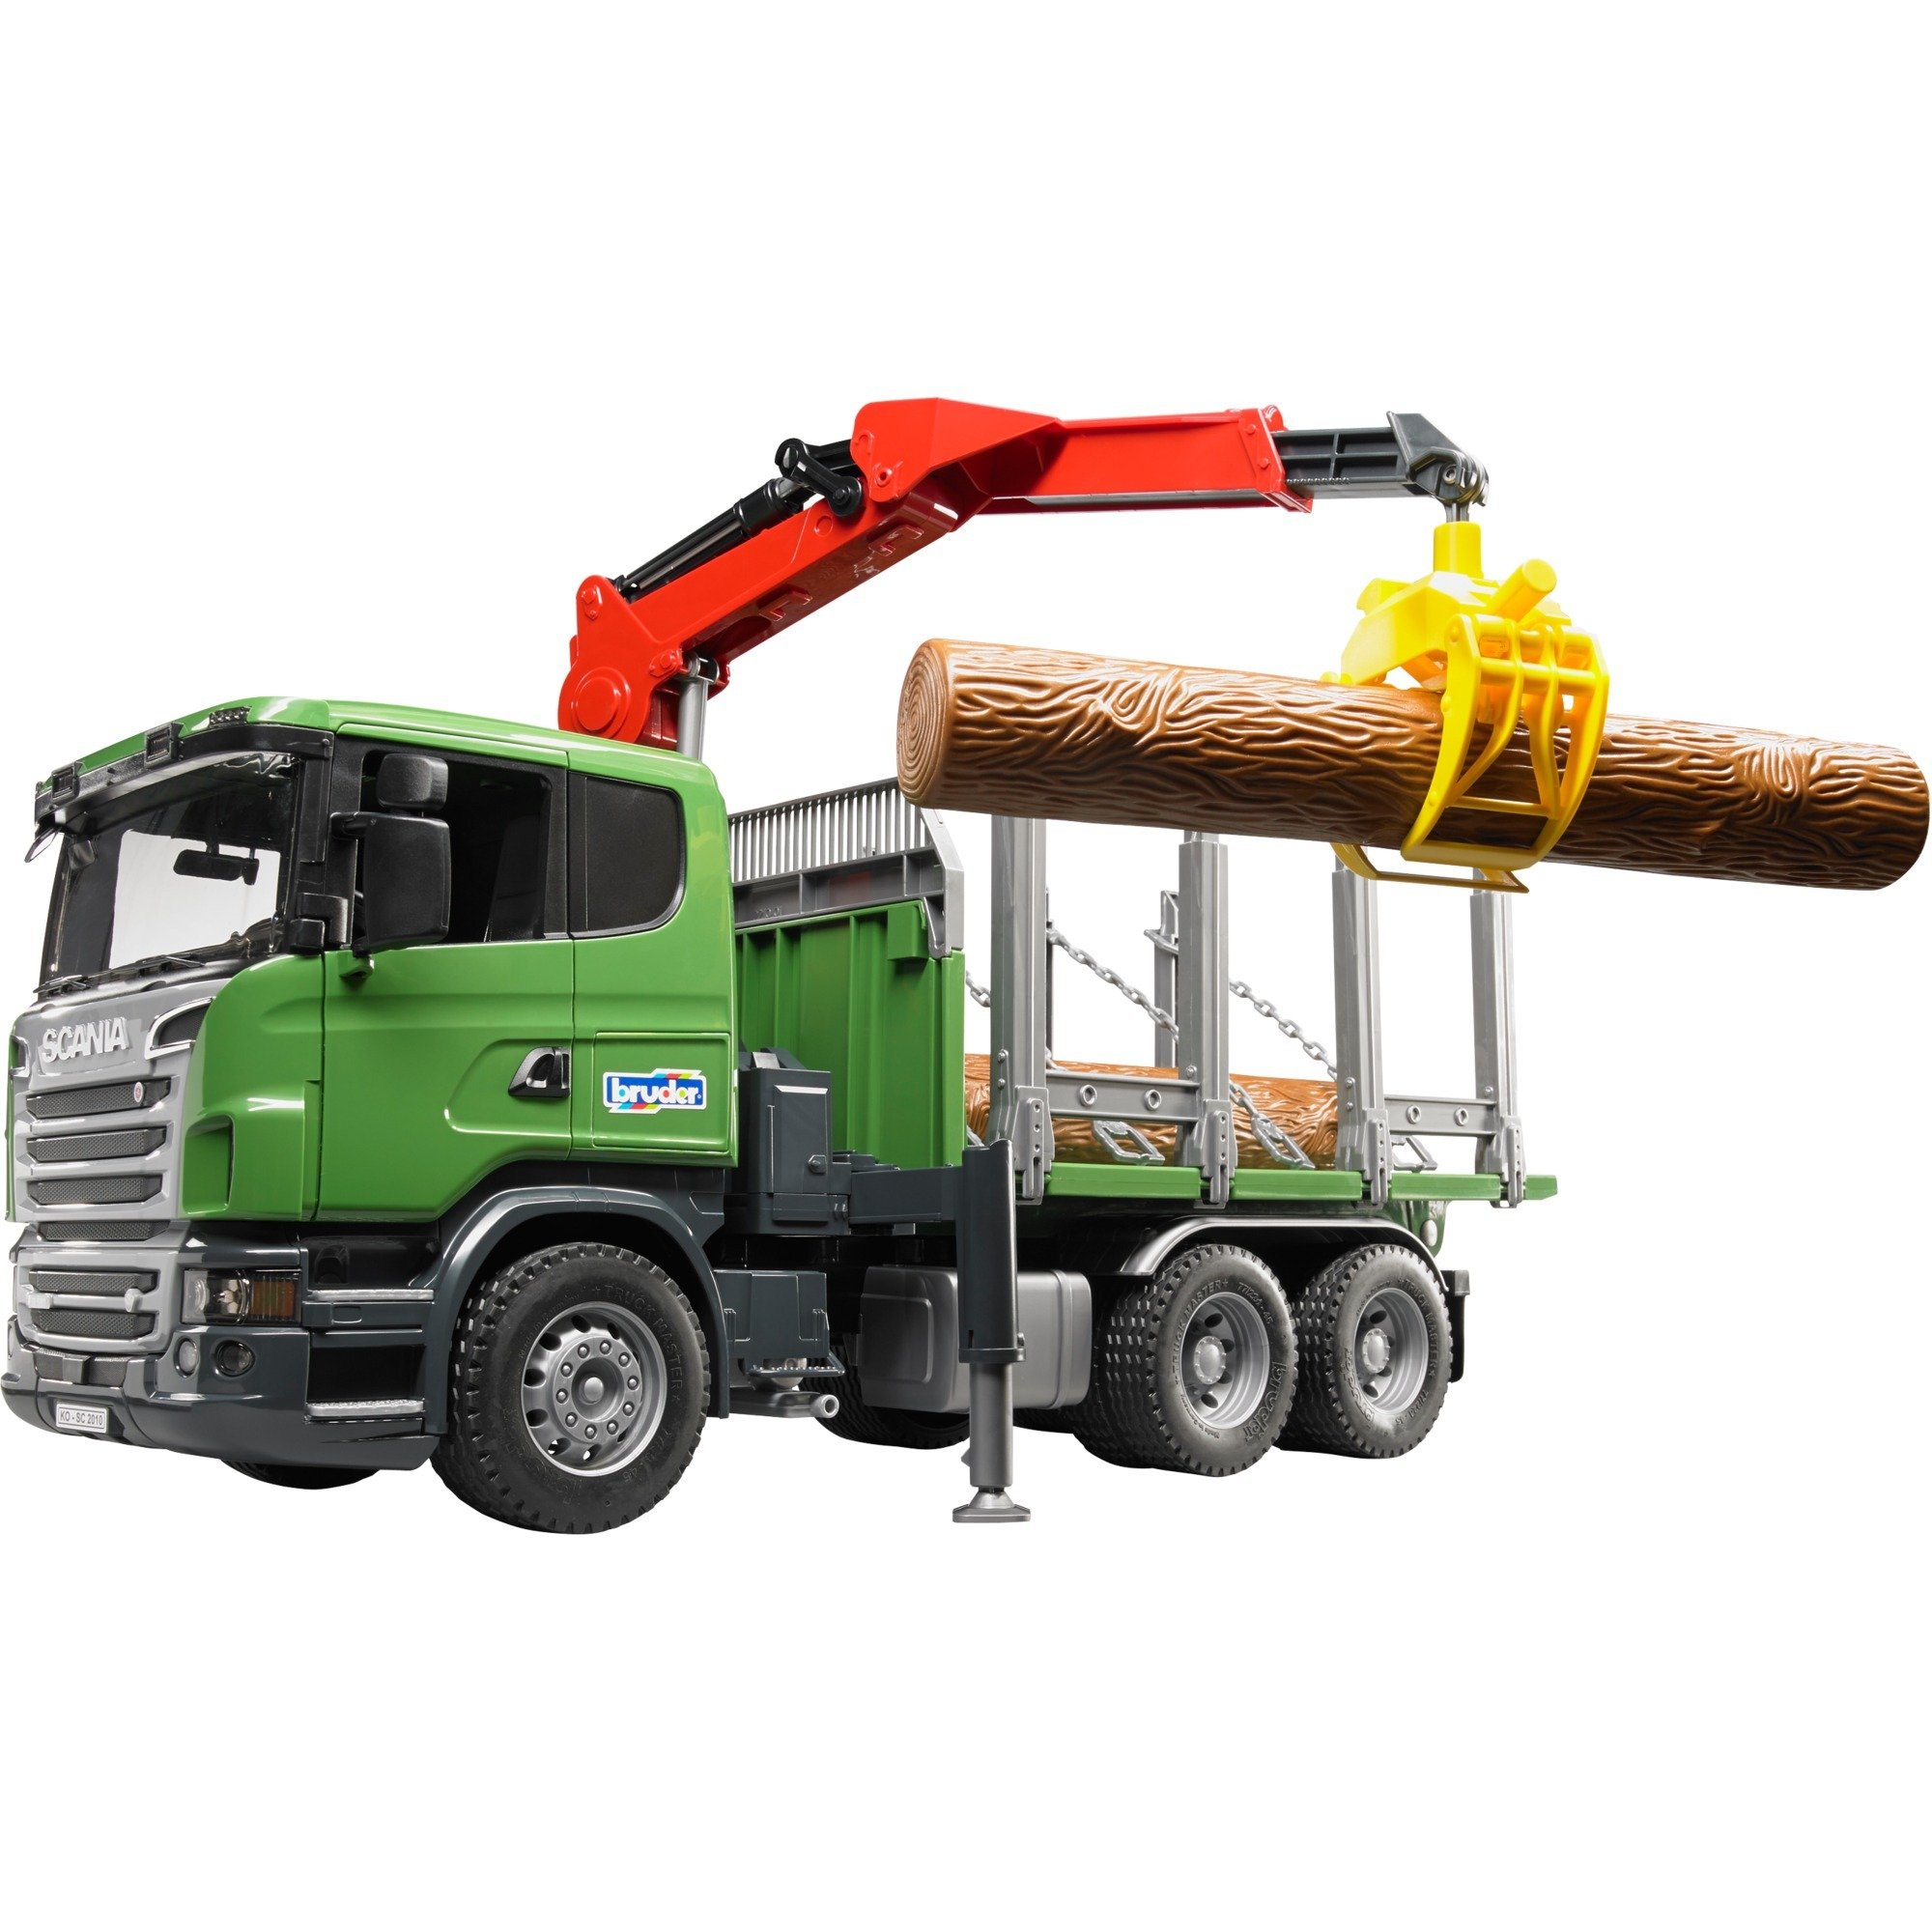 Image of Alternate - SCANIA R-Serie Holztransport-LKW mit Ladekran, Greifer und 3 Baumstämmen, Modellfahrzeug online einkaufen bei Alternate